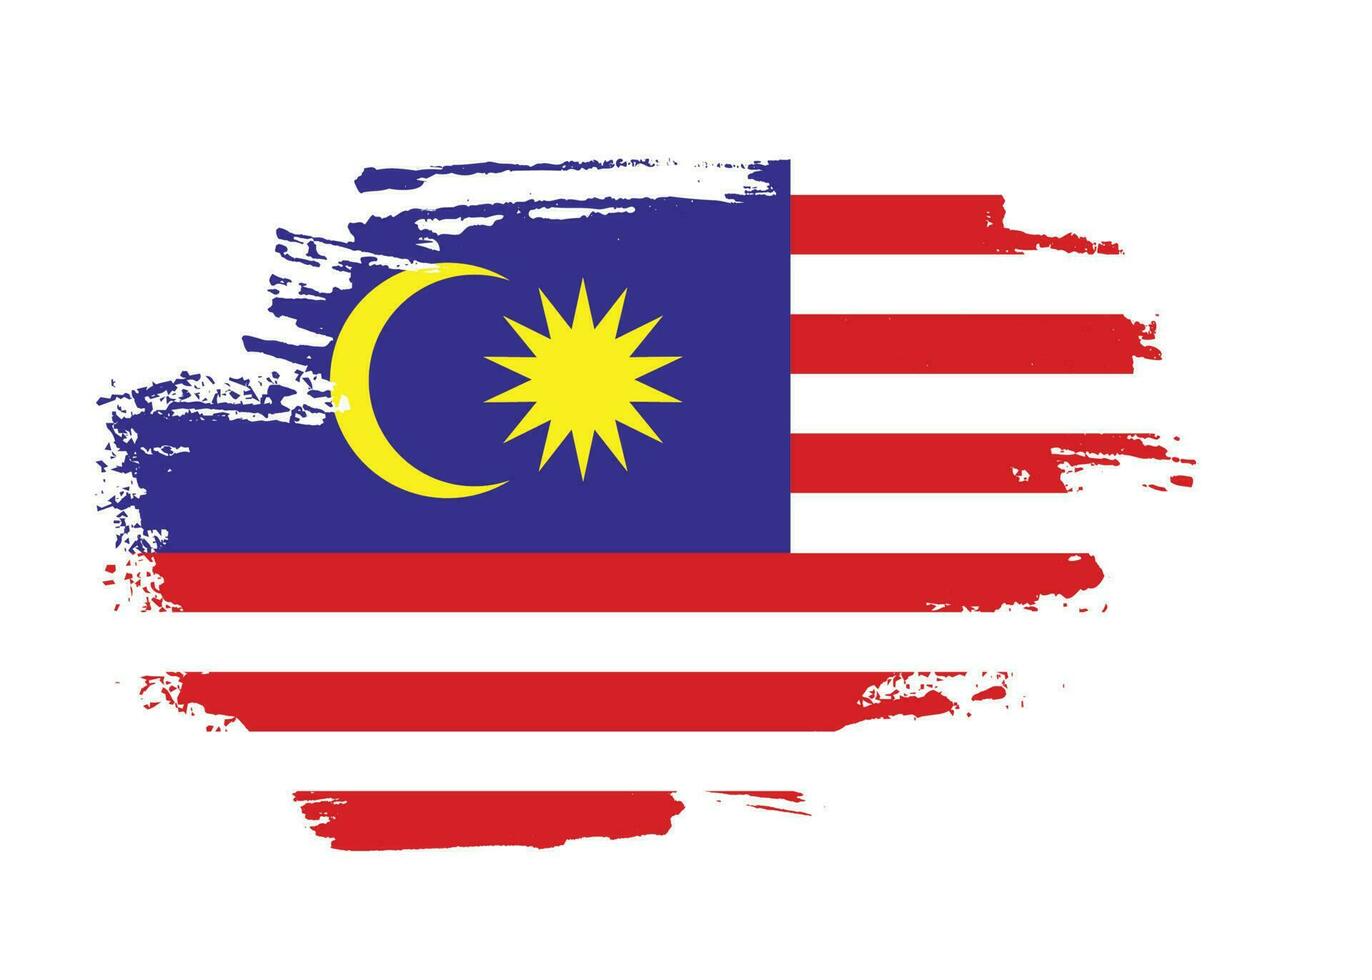 fané grunge texture malaisie vecteur de conception de drapeau professionnel